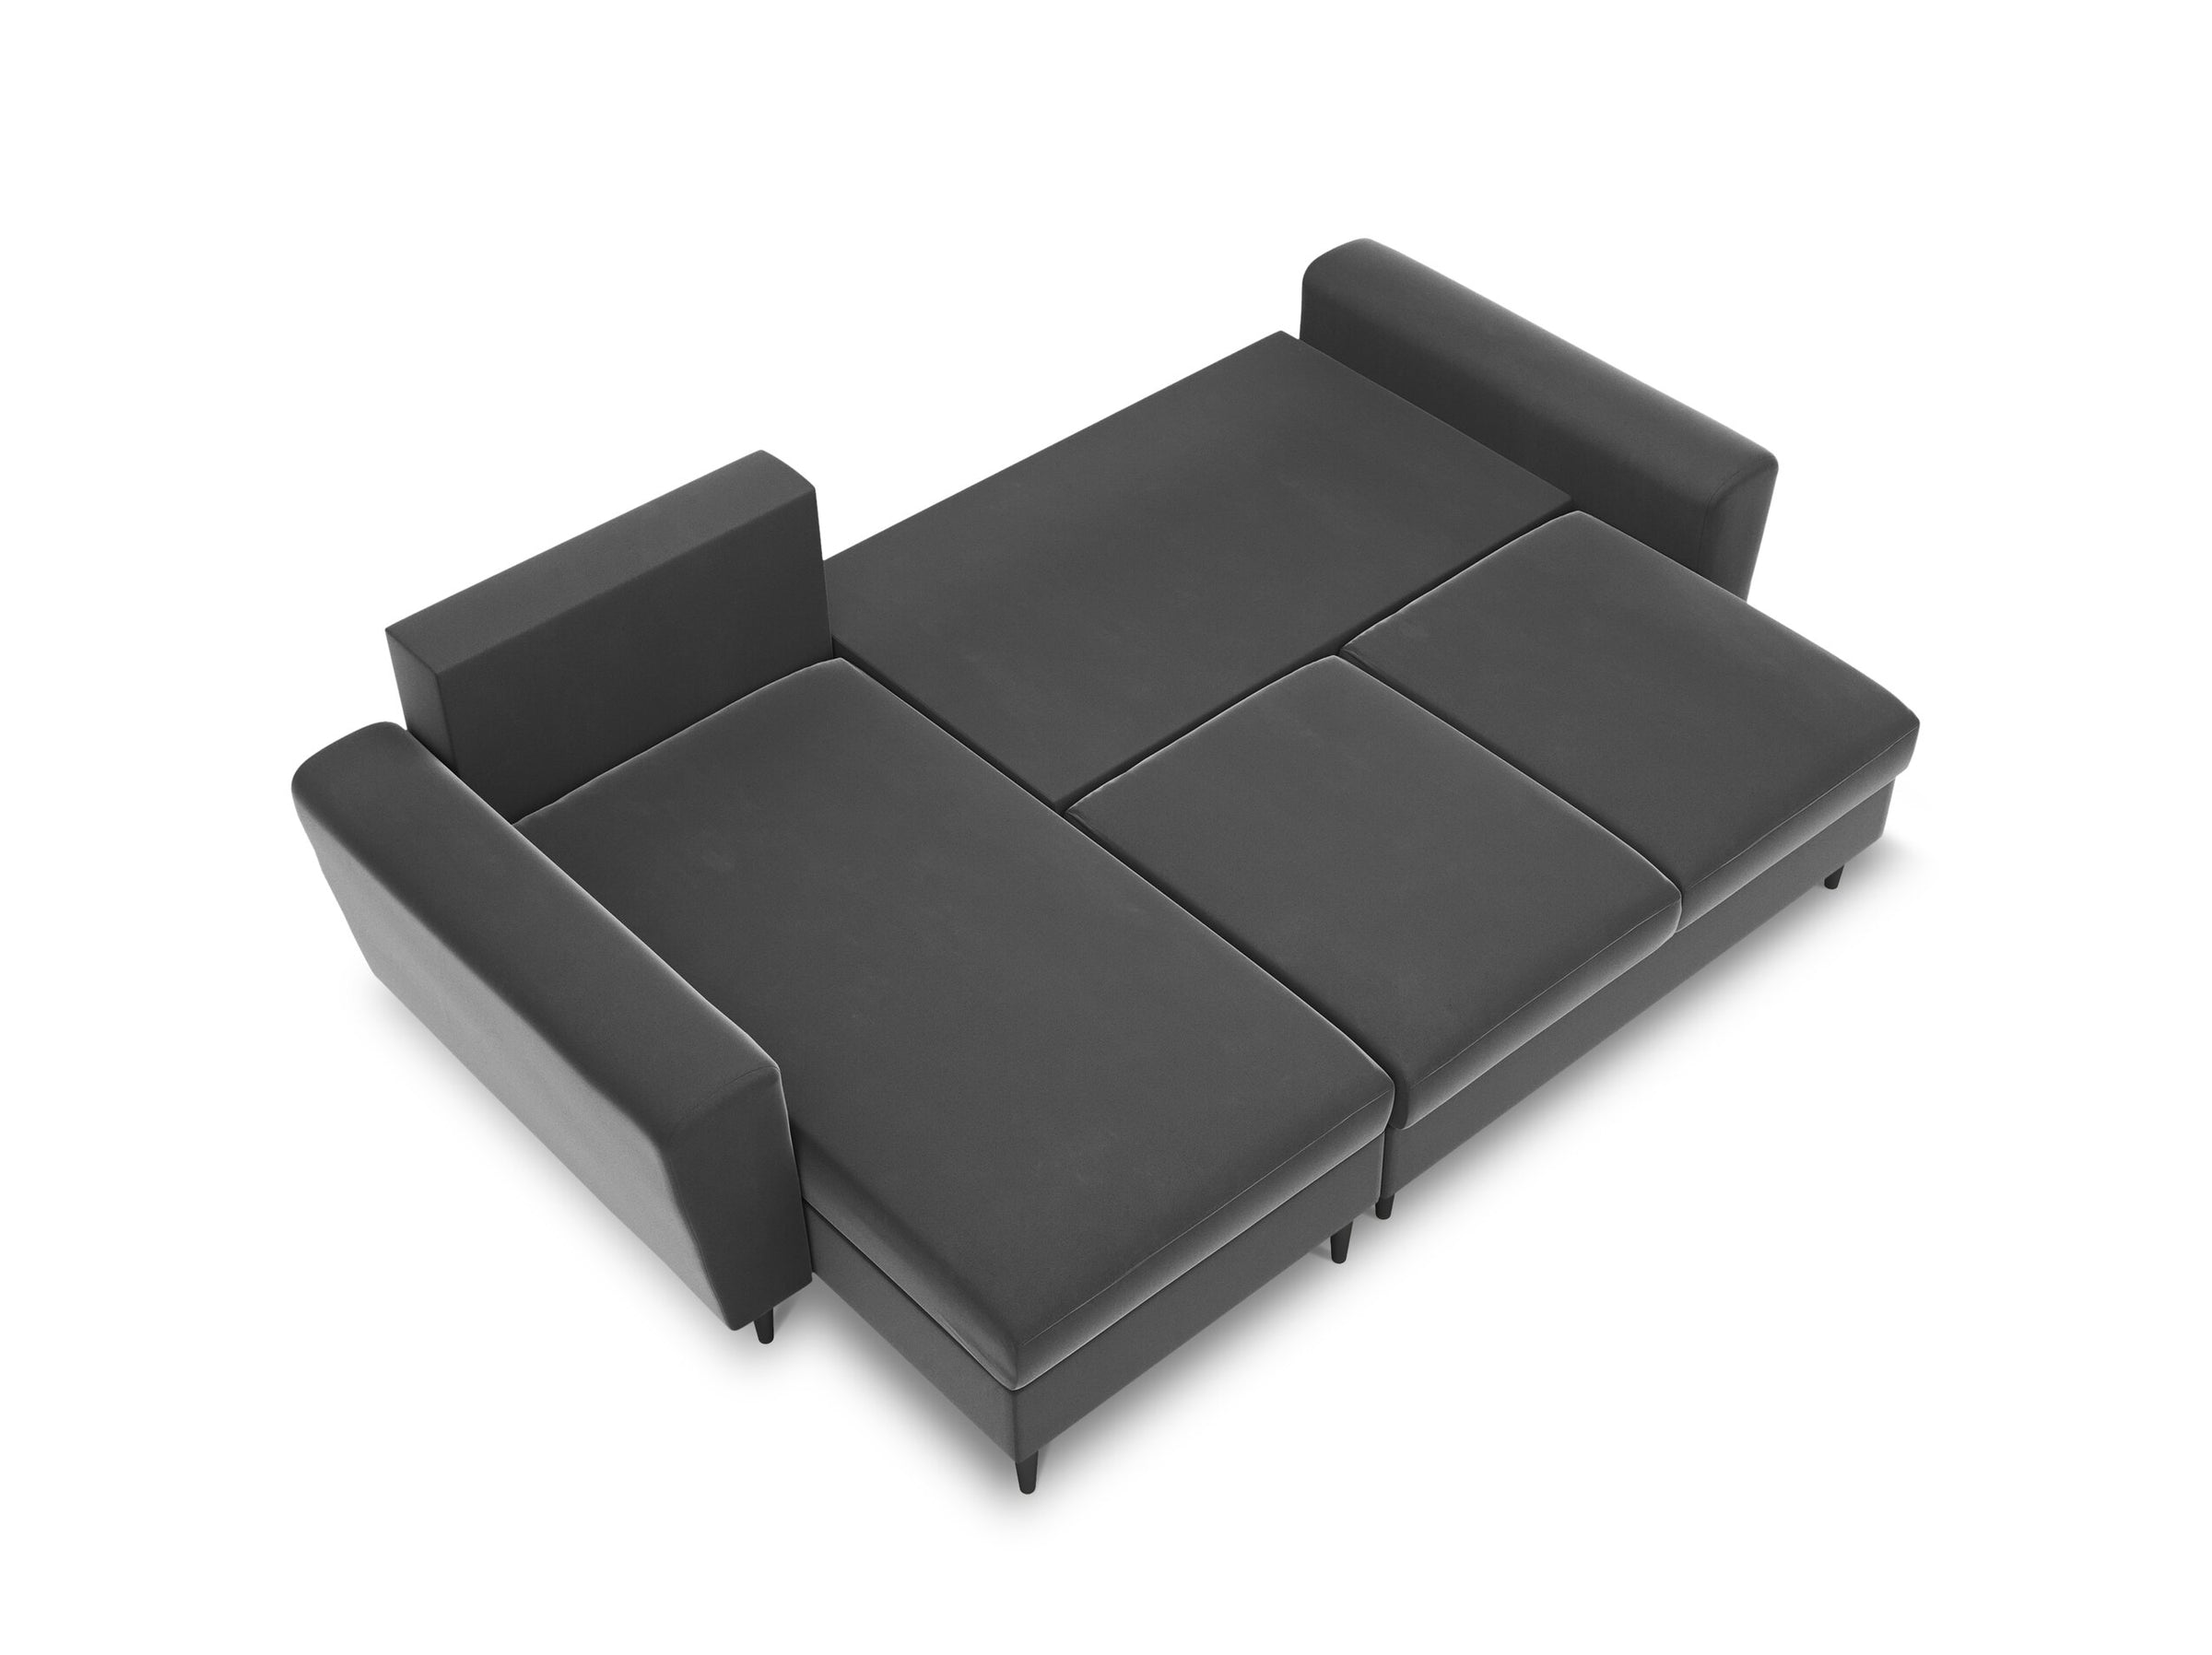 Moghan sofas velvet light grey